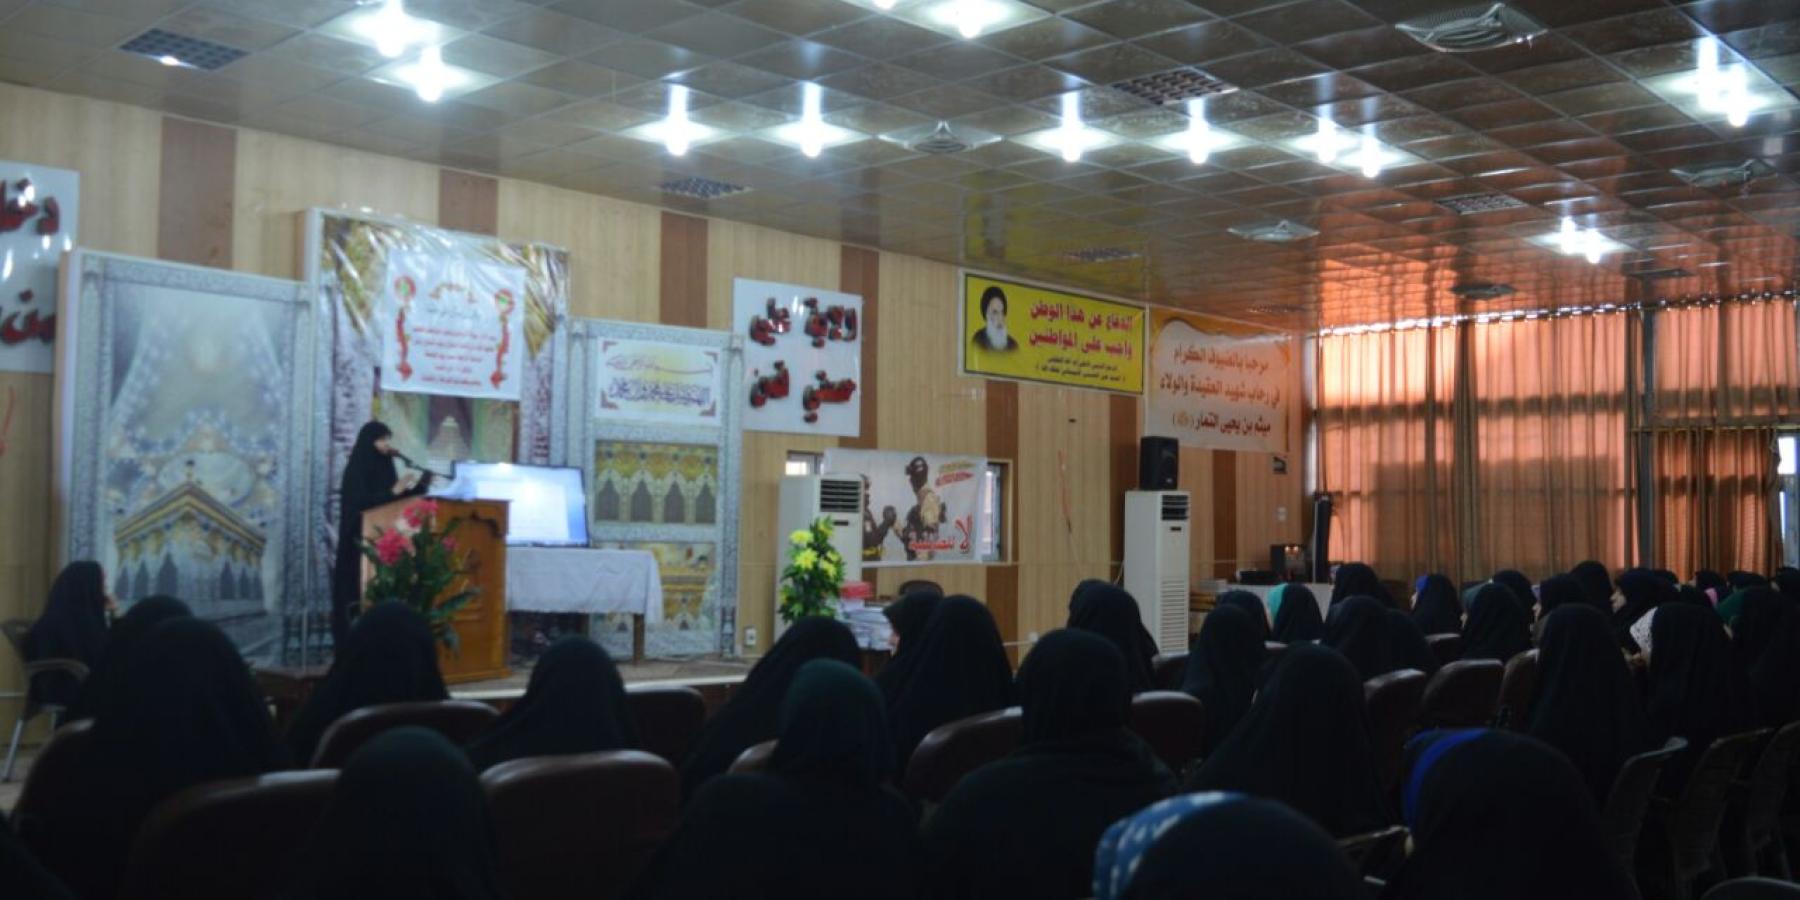 القسم النسوي في العتبة العلوية يشارك في حفل انطلاق المشروع القرآني للاطفال في مزار ميثم التمار